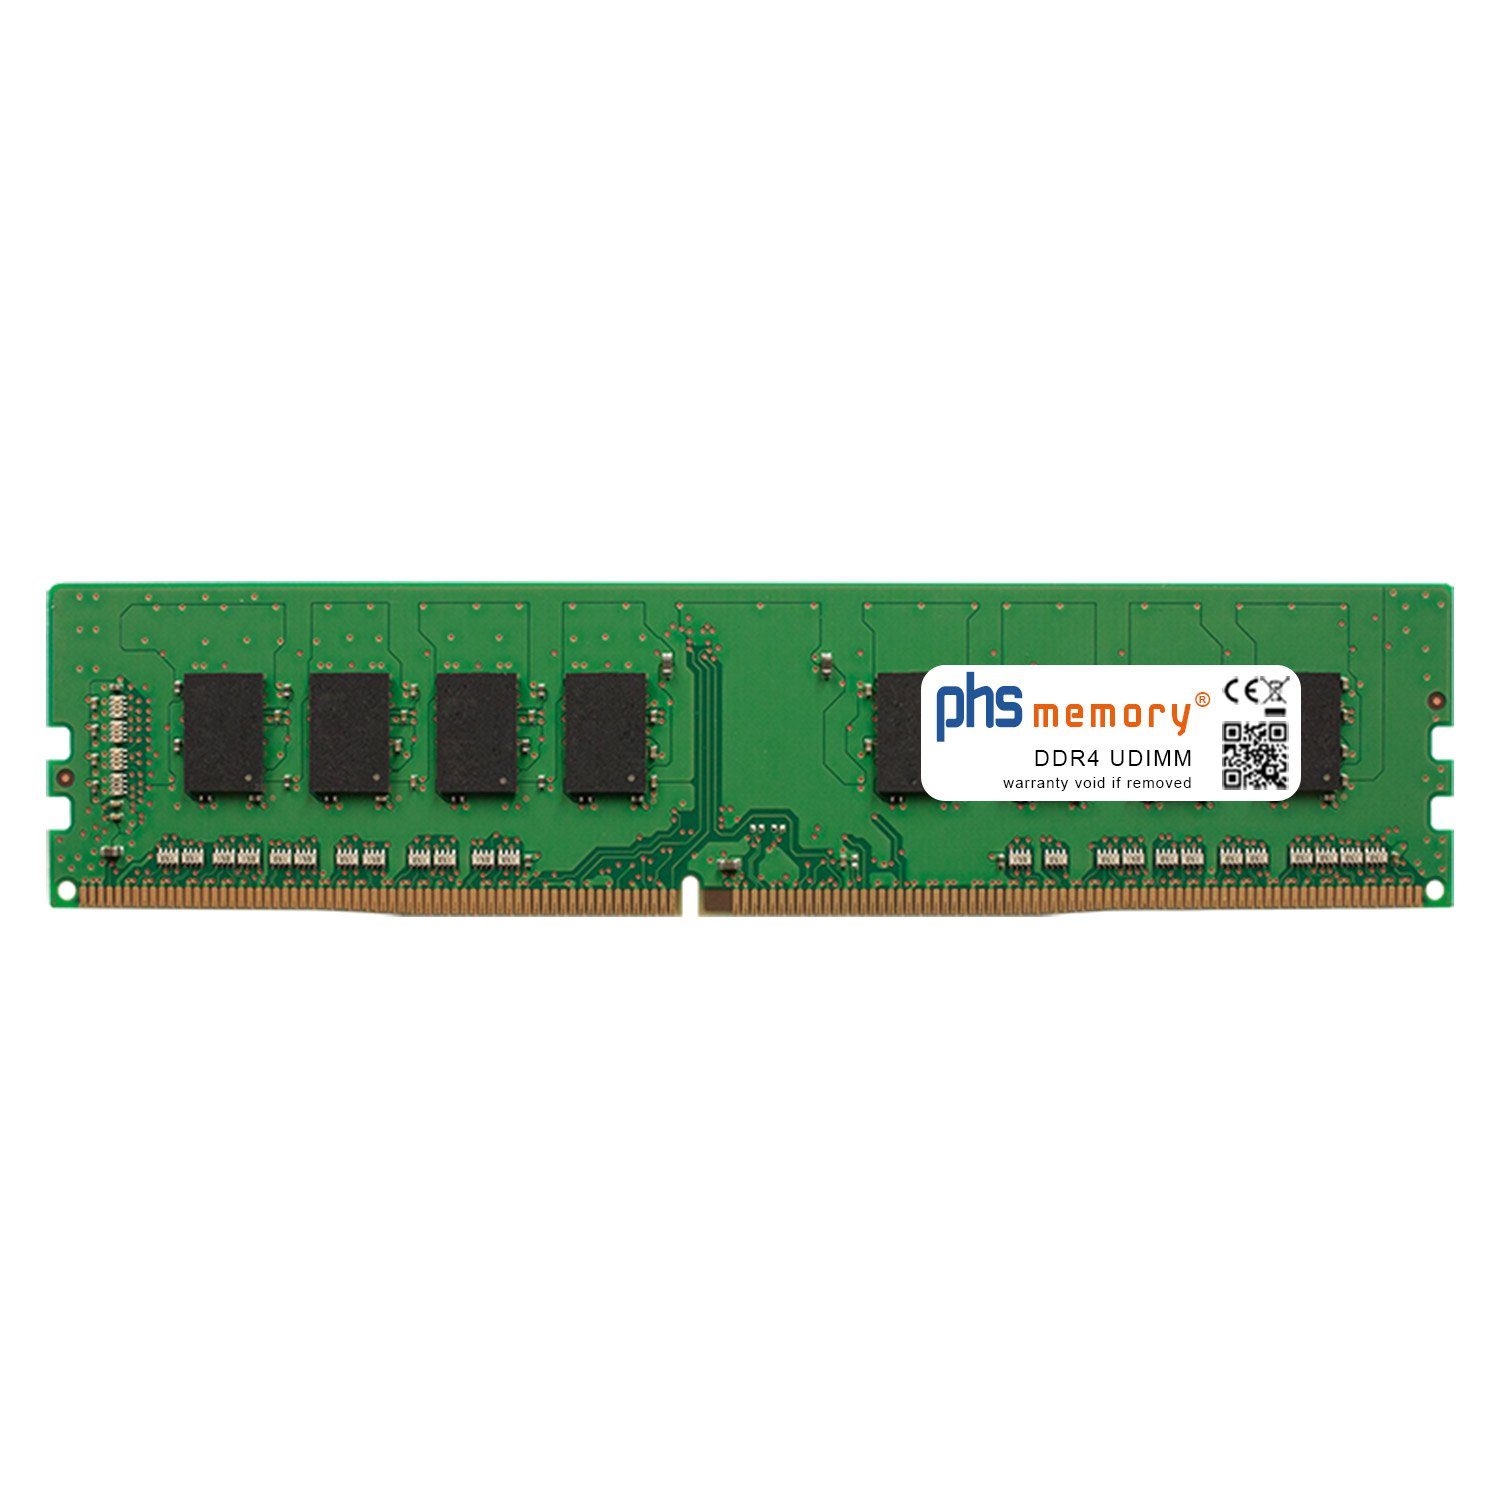 PHS-memory RAM für Captiva Highend Gaming R65-568 Arbeitsspeicher